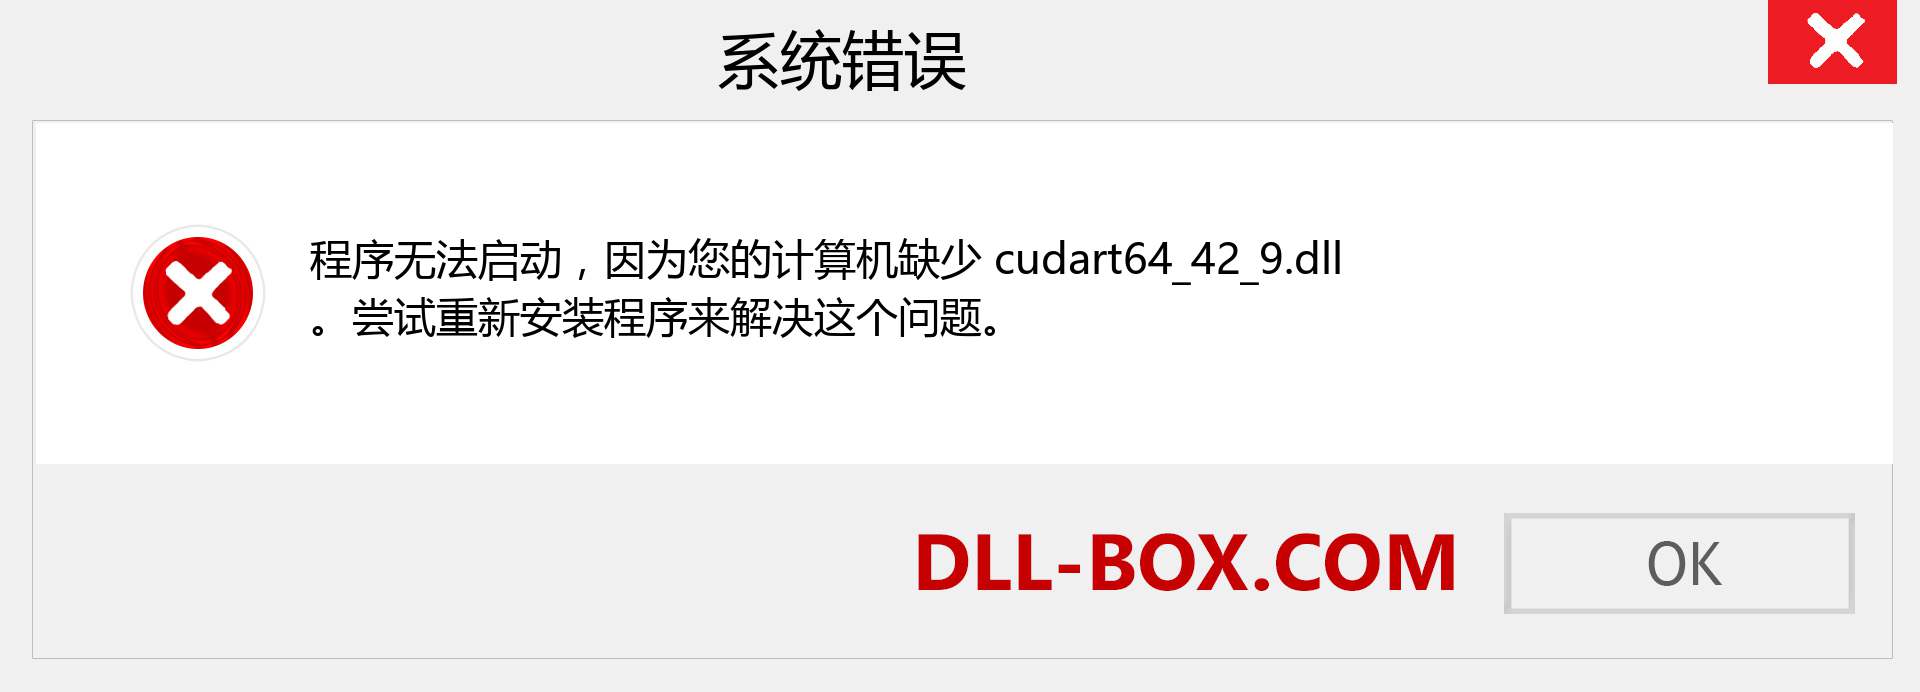 cudart64_42_9.dll 文件丢失？。 适用于 Windows 7、8、10 的下载 - 修复 Windows、照片、图像上的 cudart64_42_9 dll 丢失错误